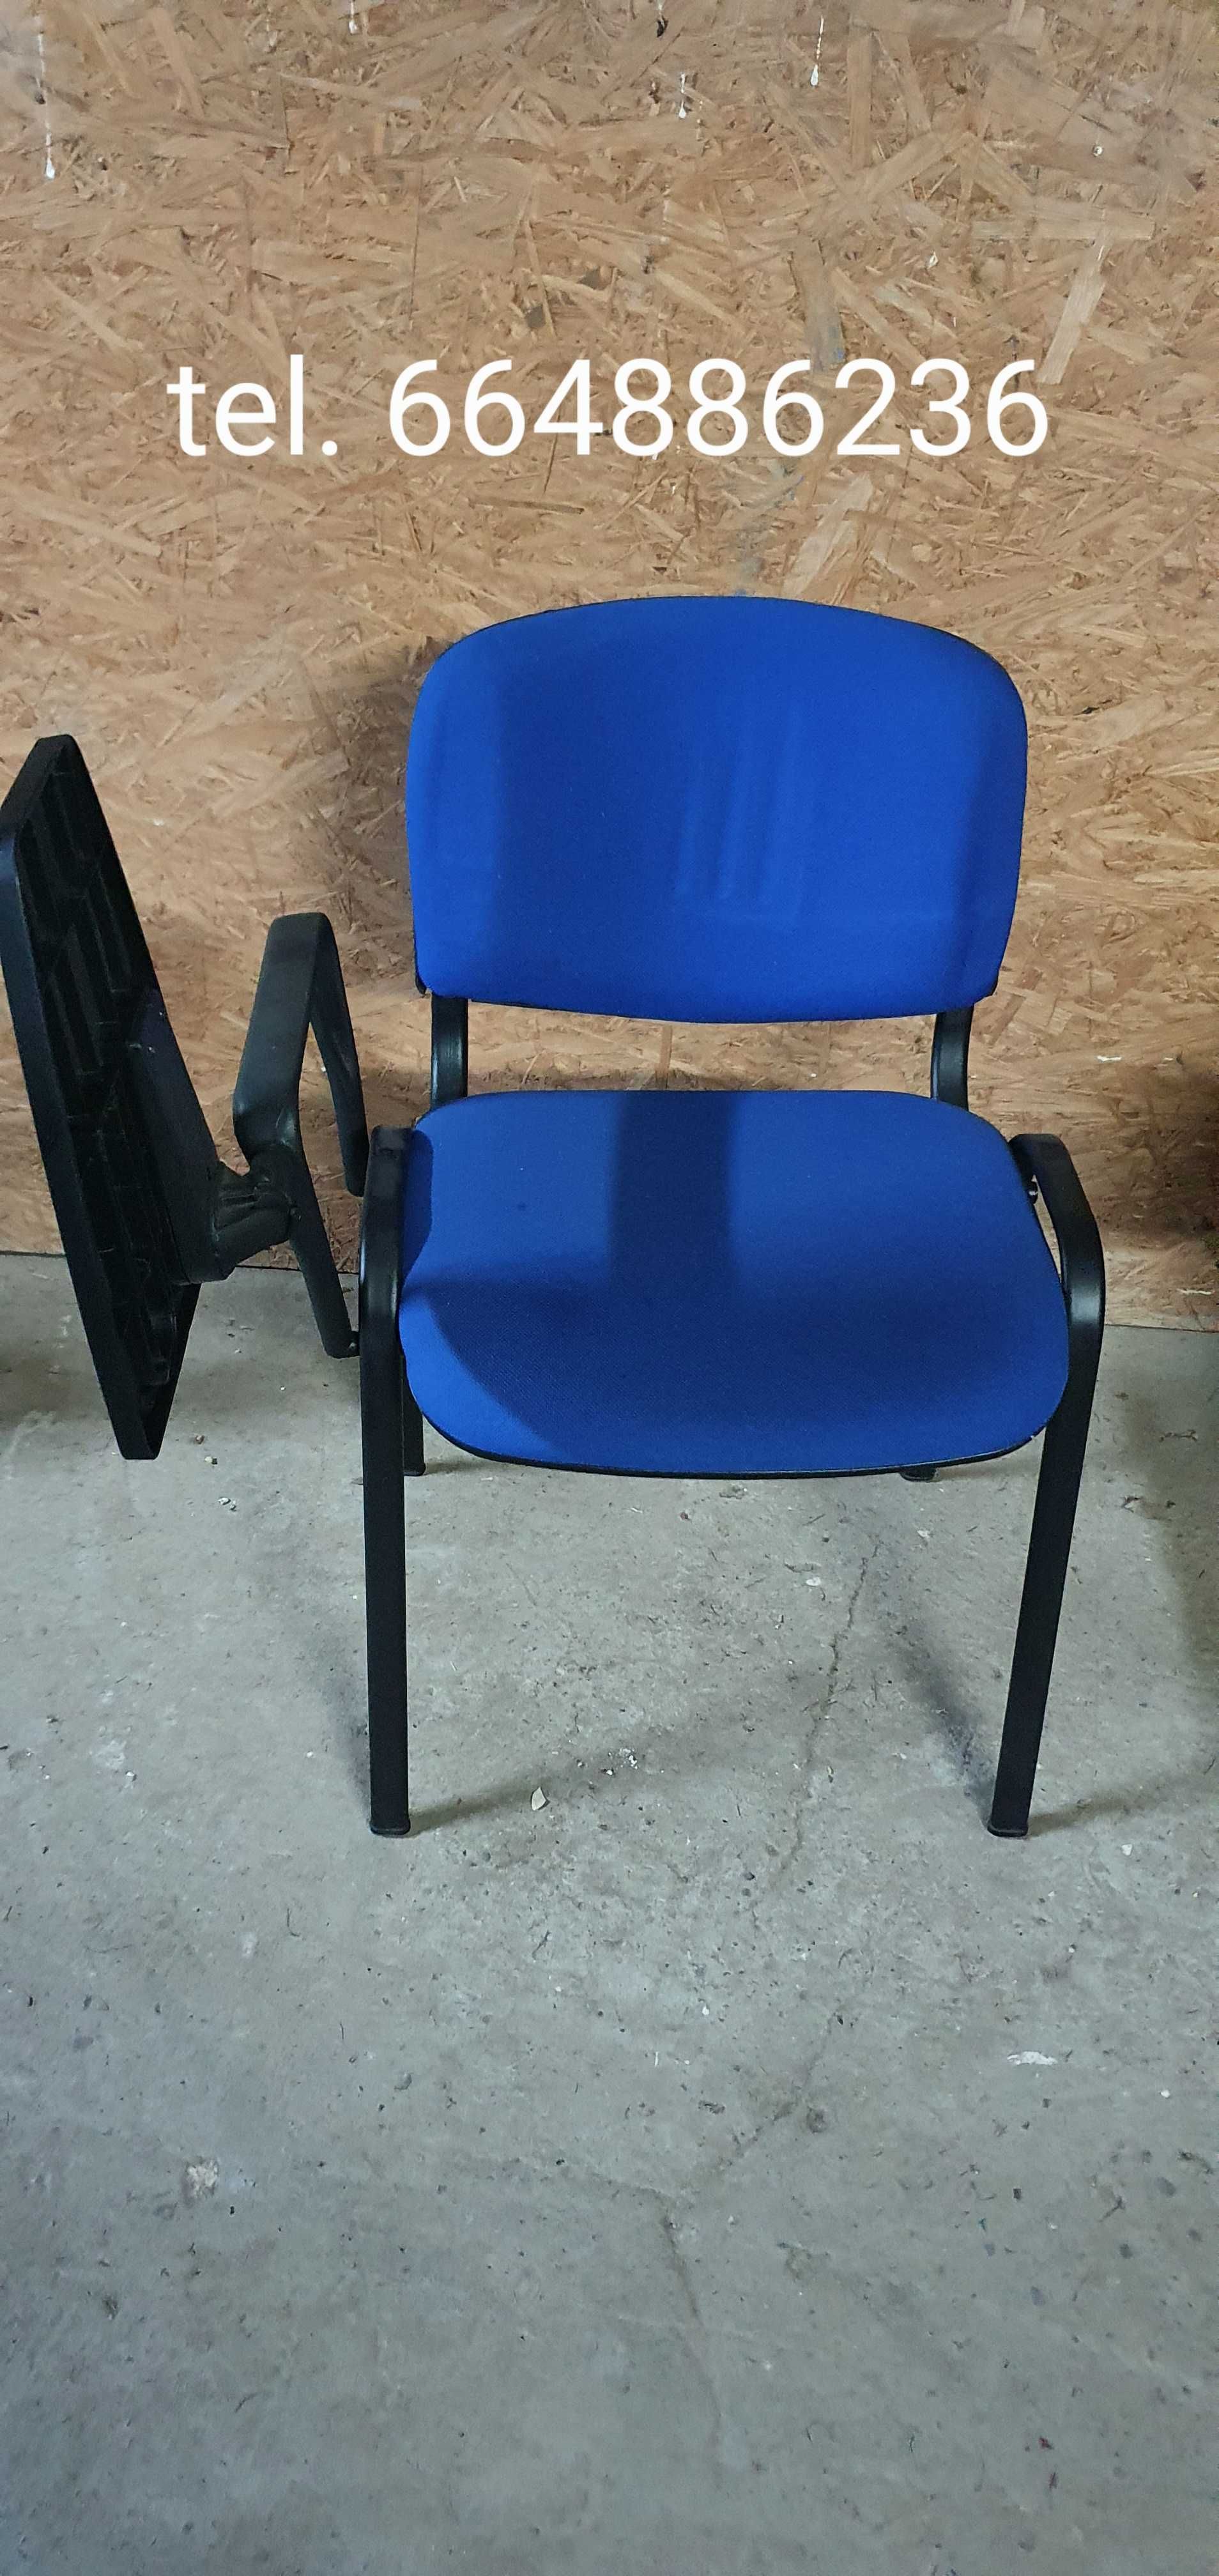 Fotel fotele konferencyjne. Krzesło krzesła biurowe